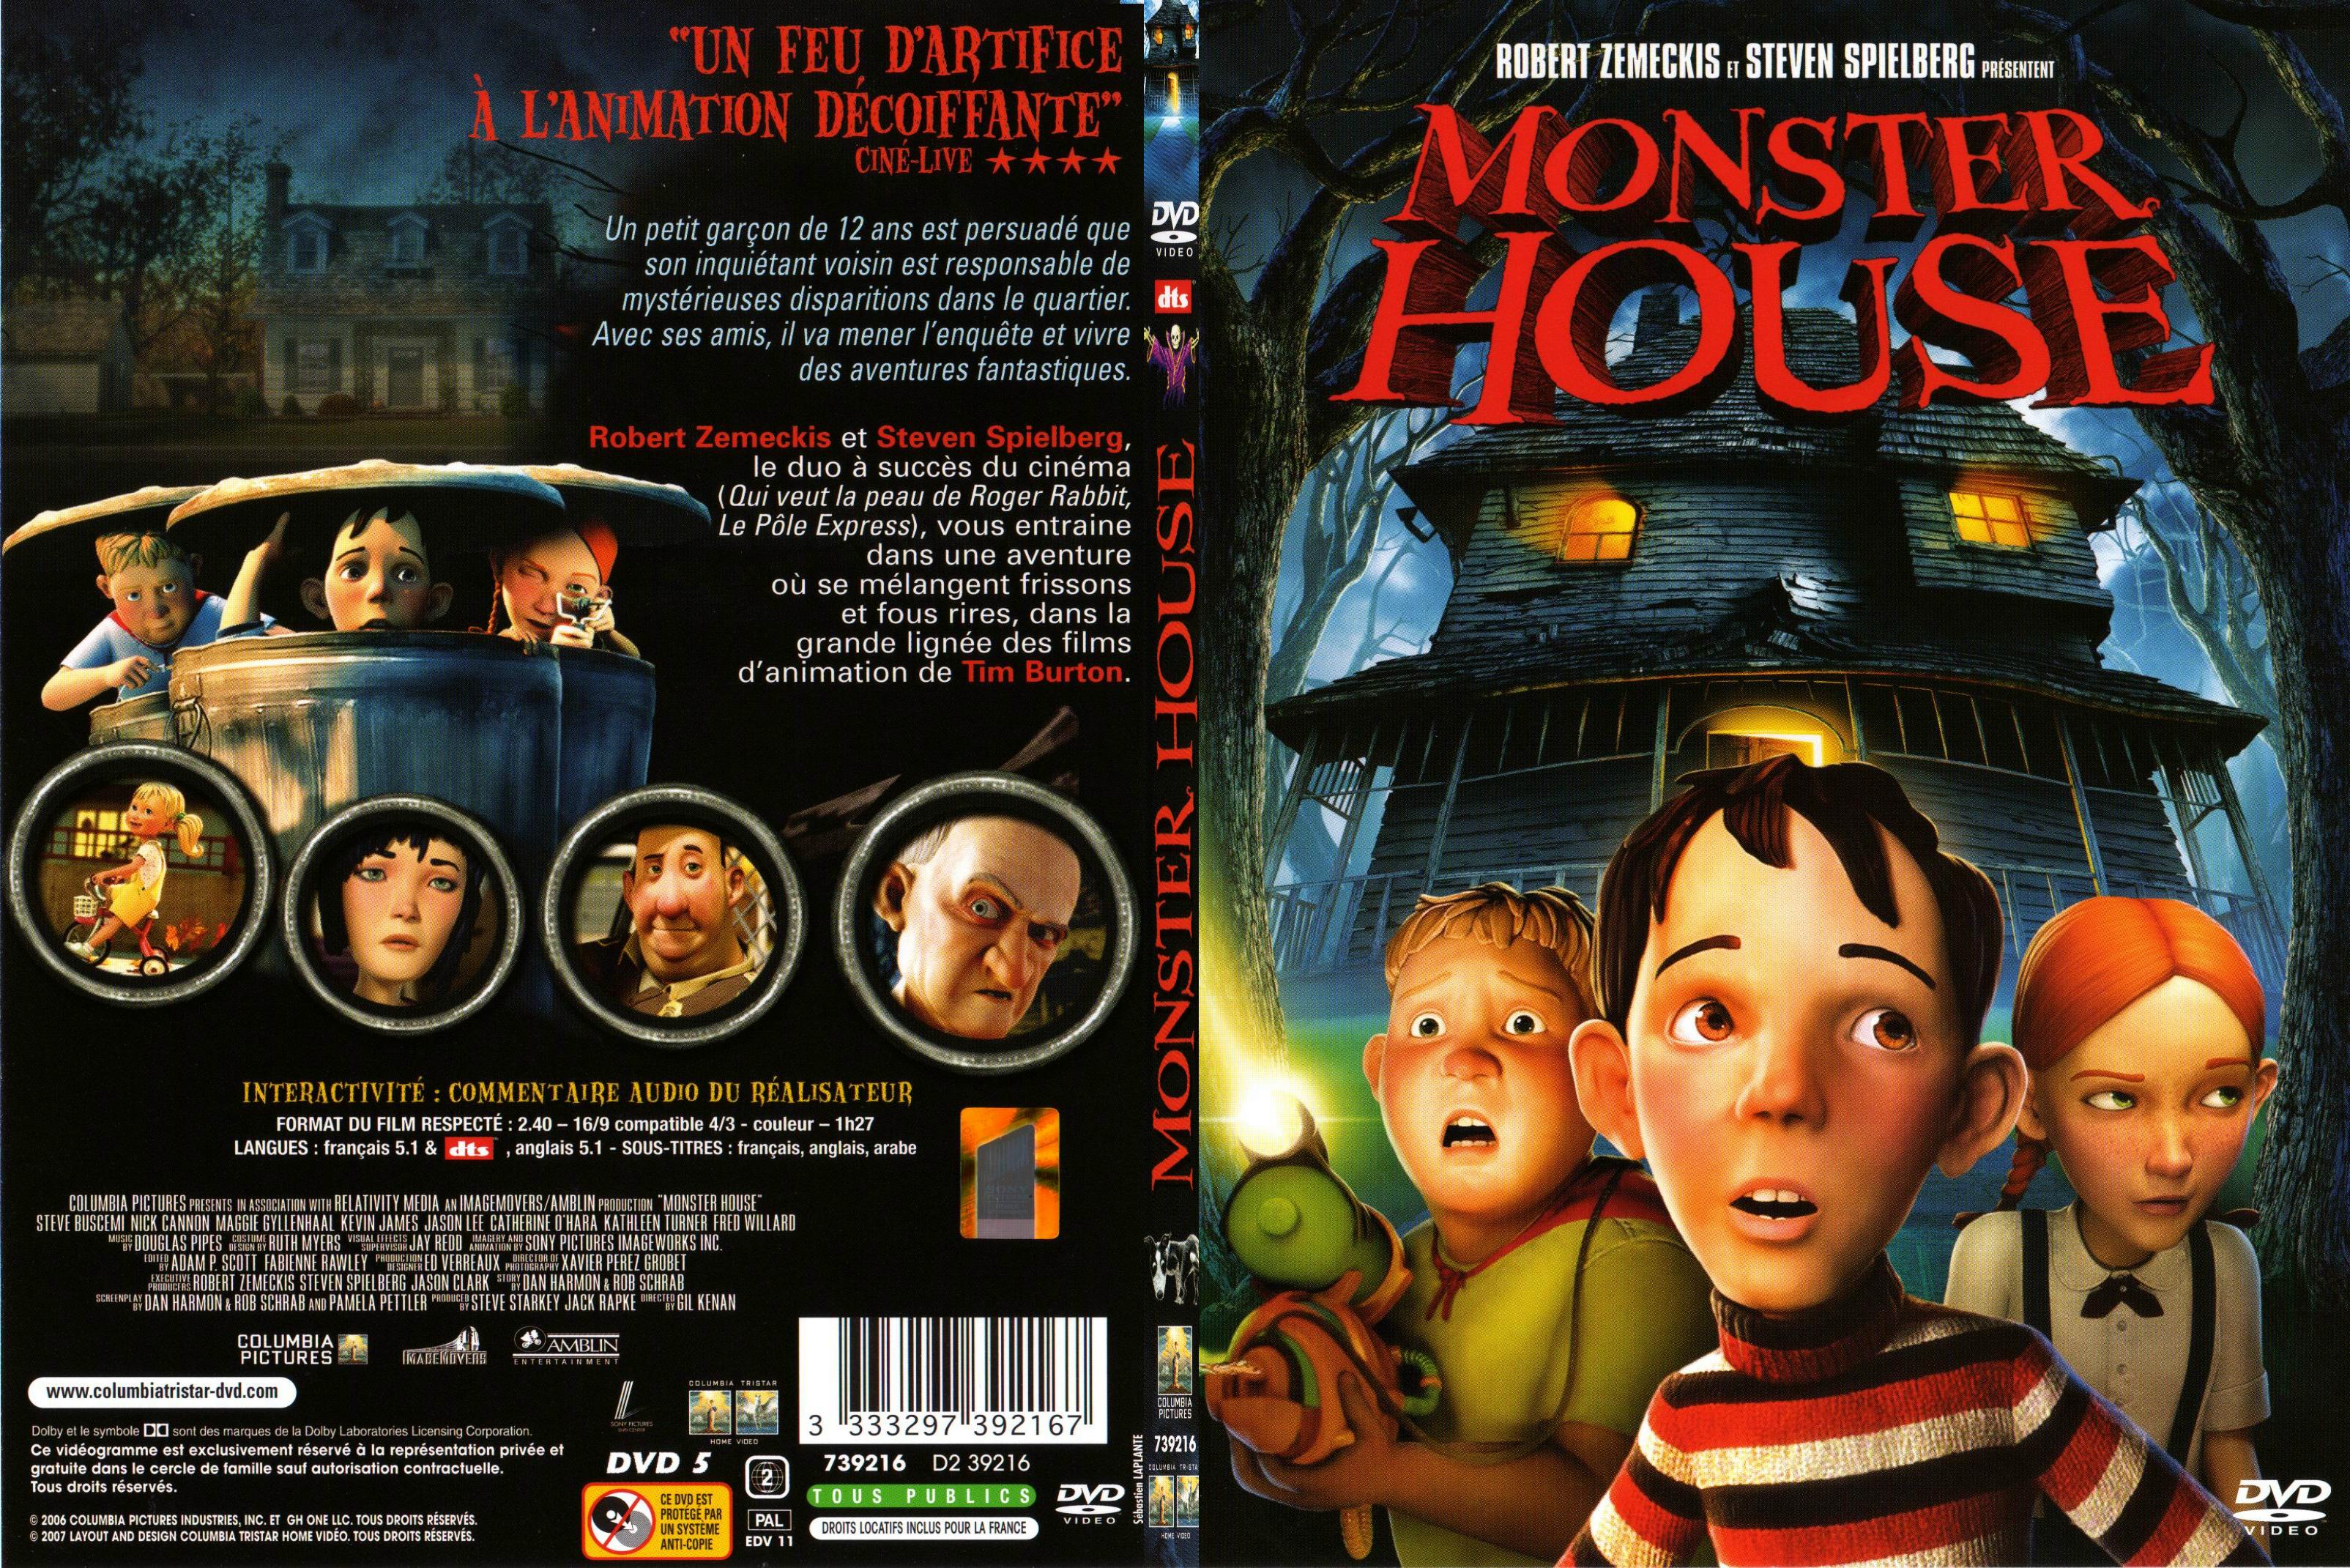 Jaquette DVD Monster house - SLIM v3